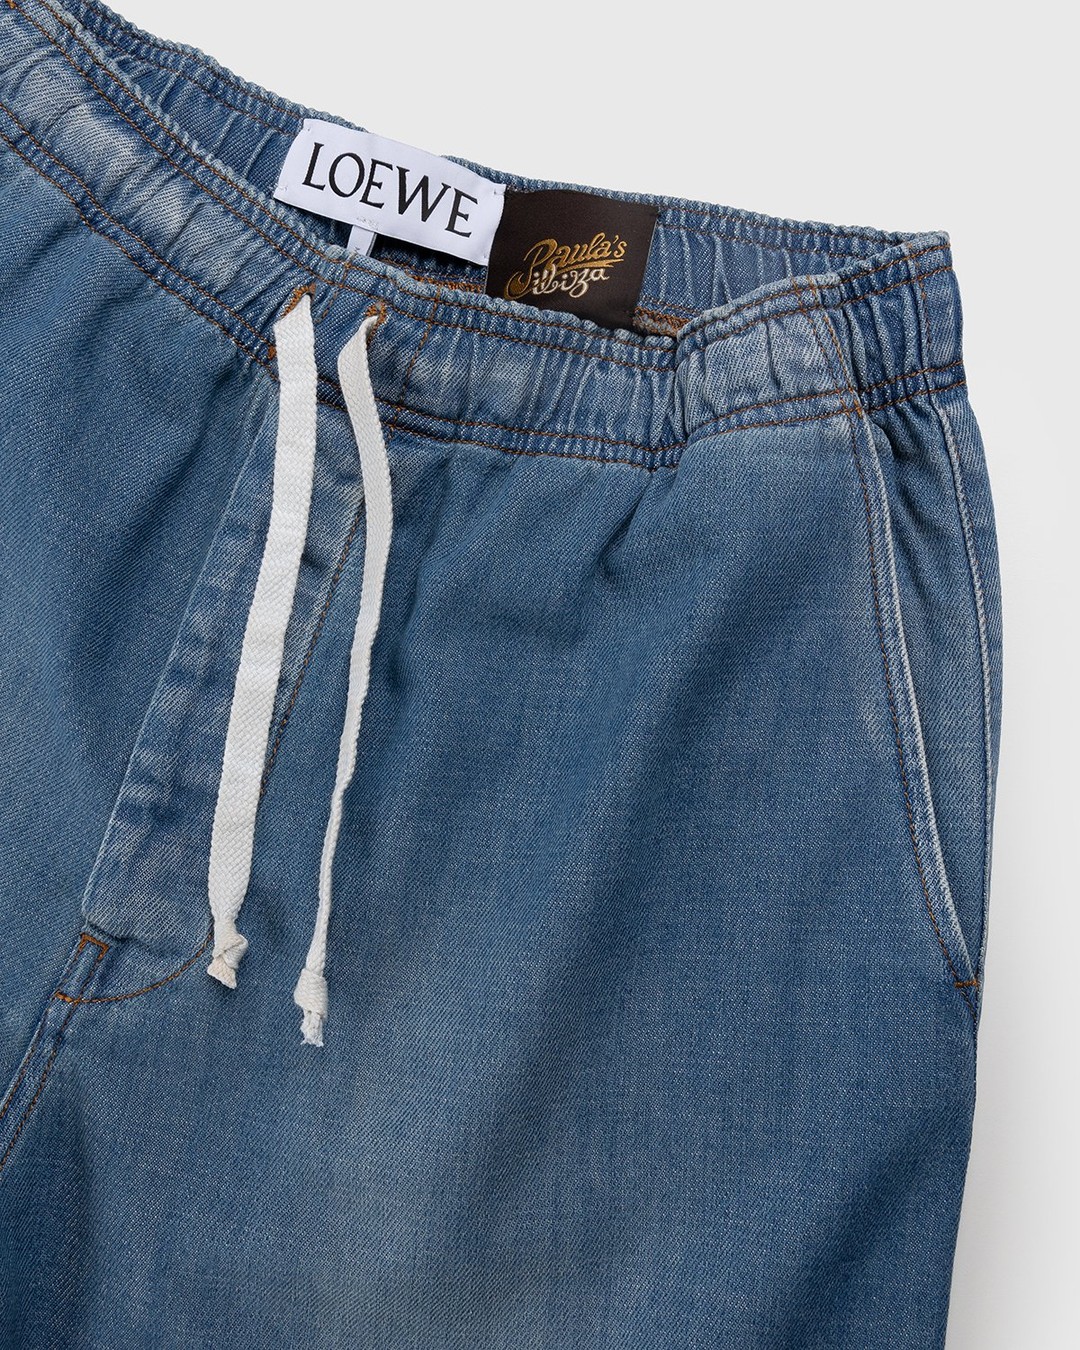 Loewe – Paula's Ibiza Drawstring Denim Shorts Blue - Shorts - Blue - Image 4